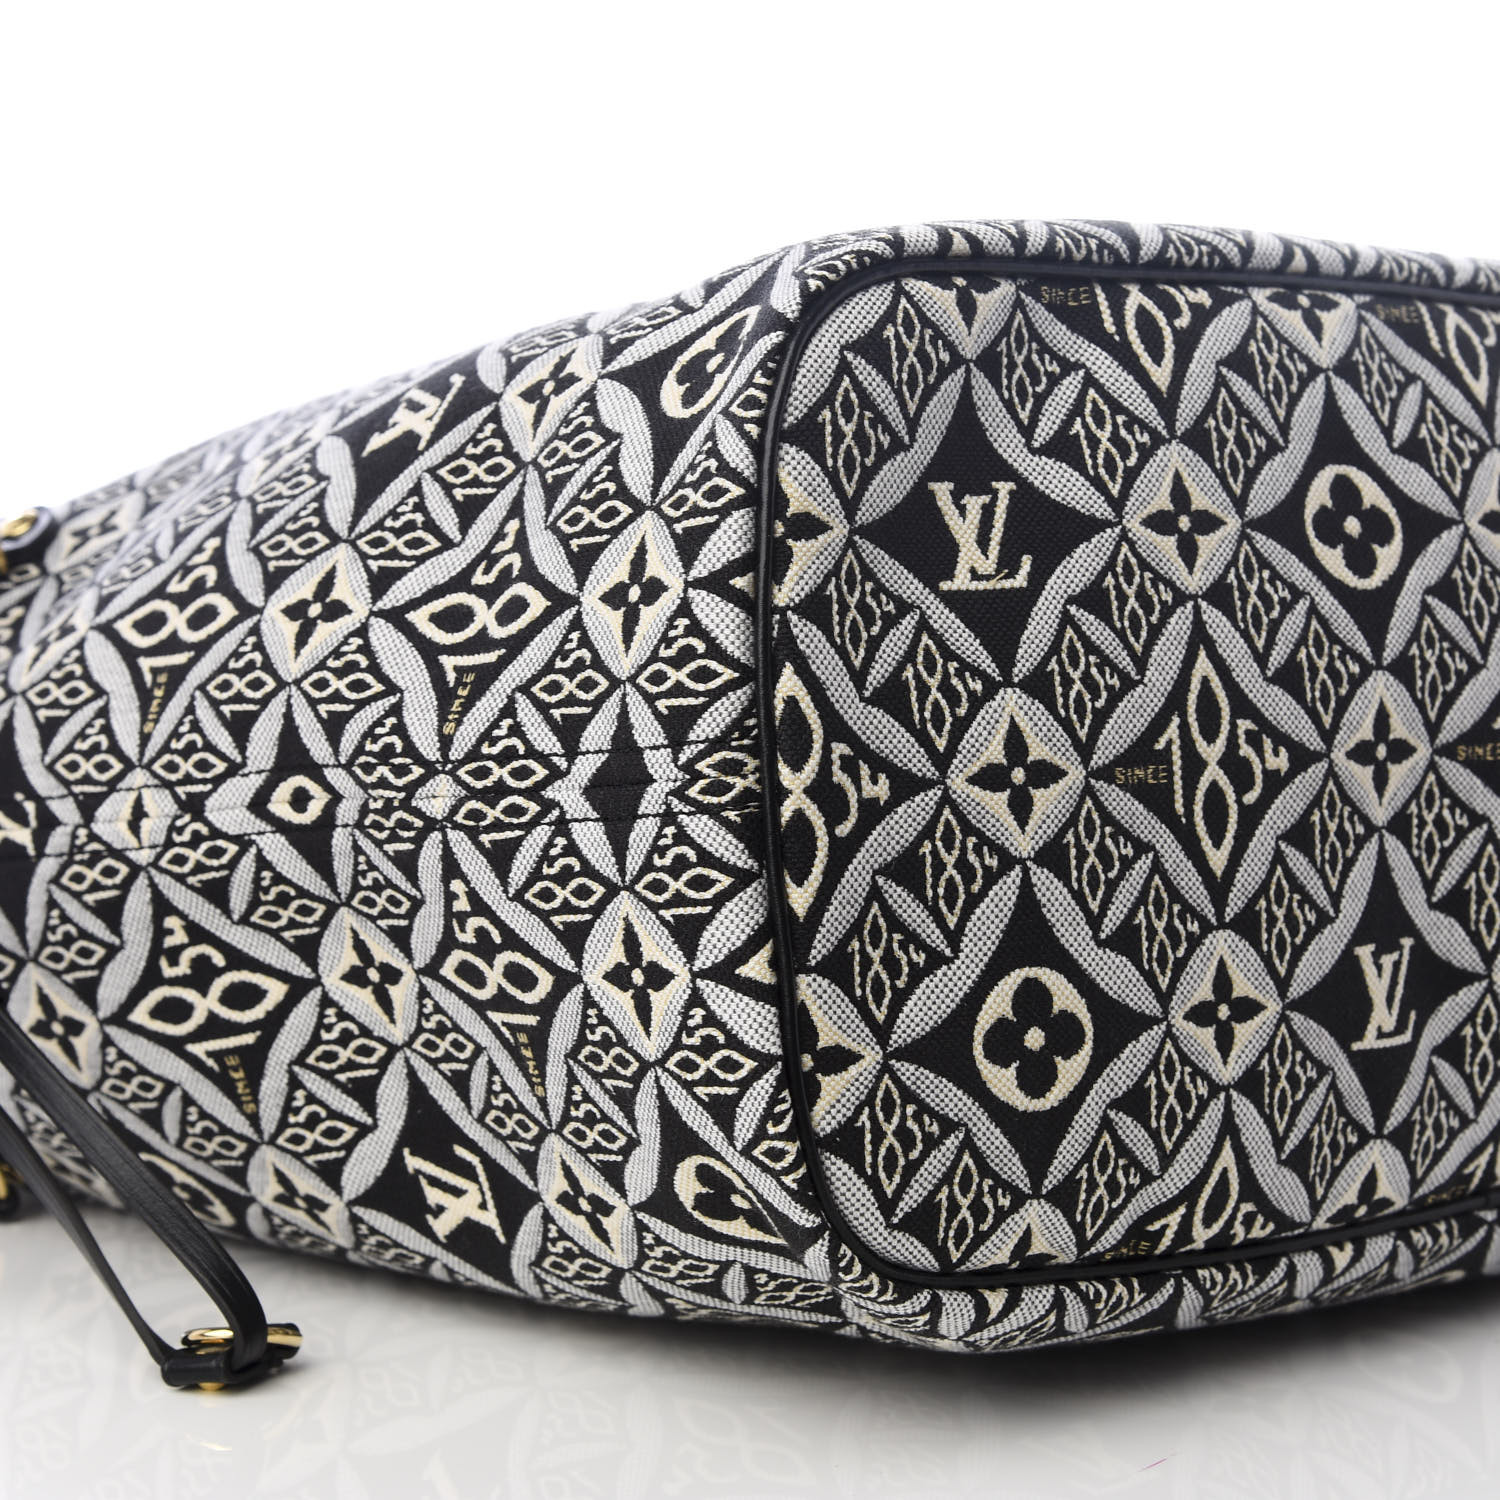 Shop Louis Vuitton NEVERFULL Since 1854 neverfull mm (M57273